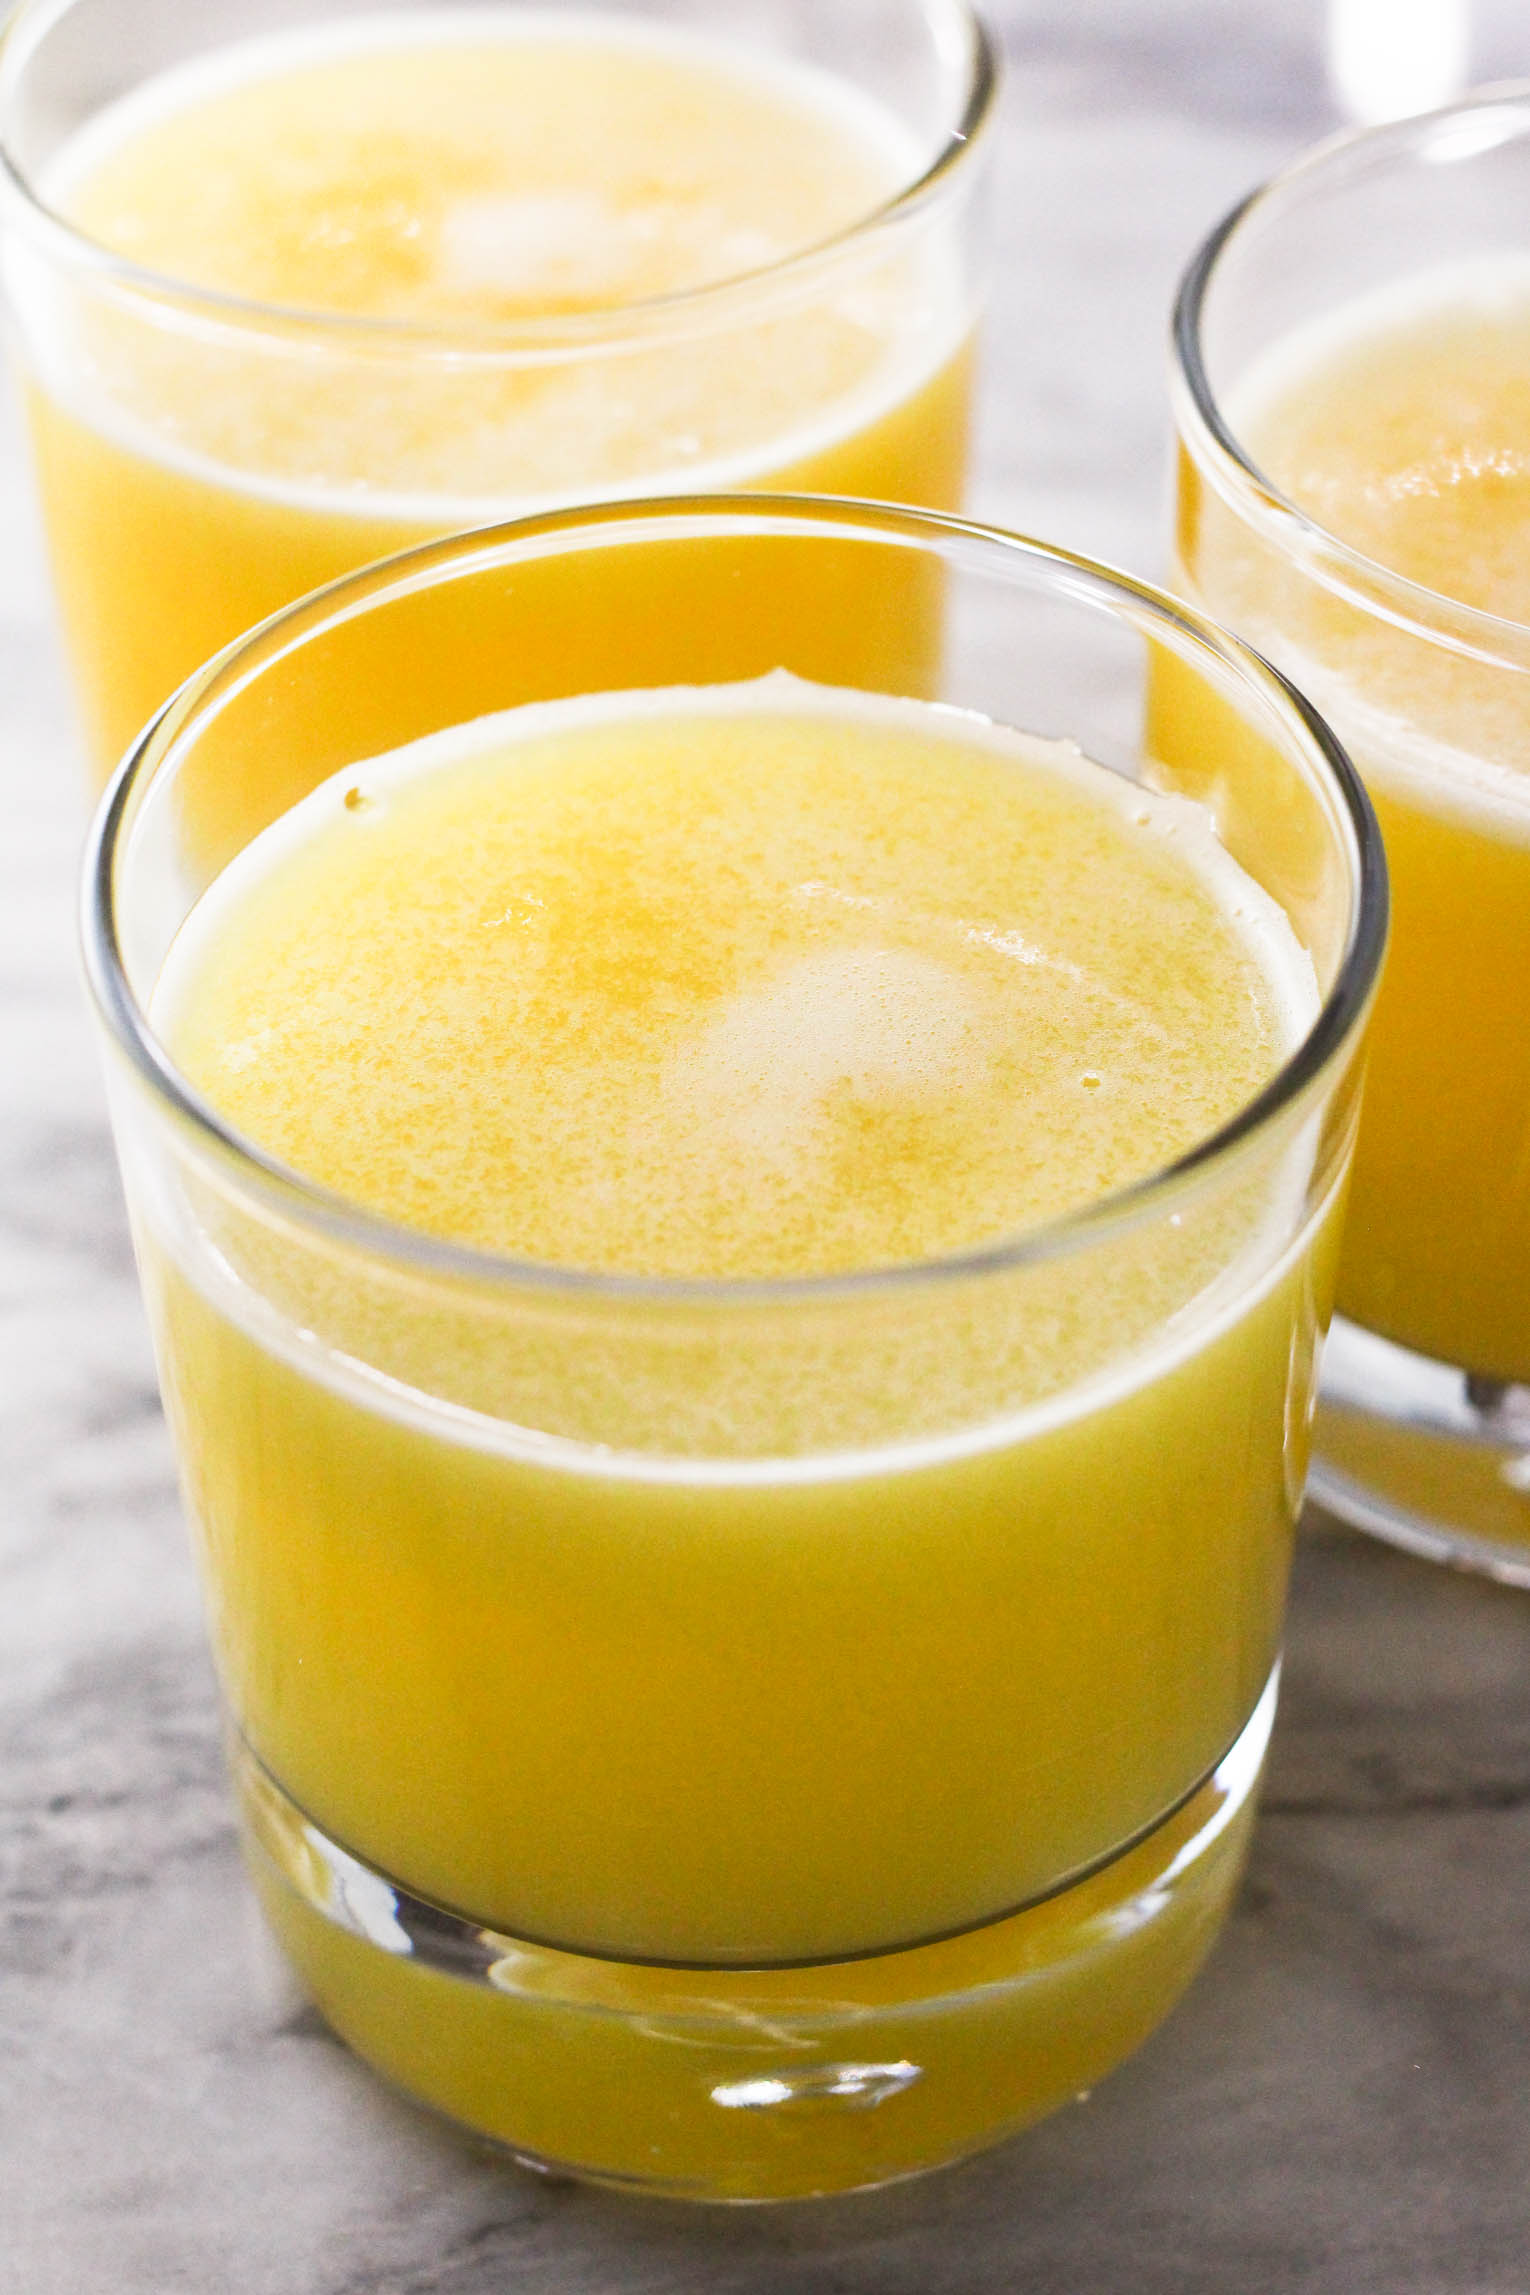 Three glasses of pineapple juice.